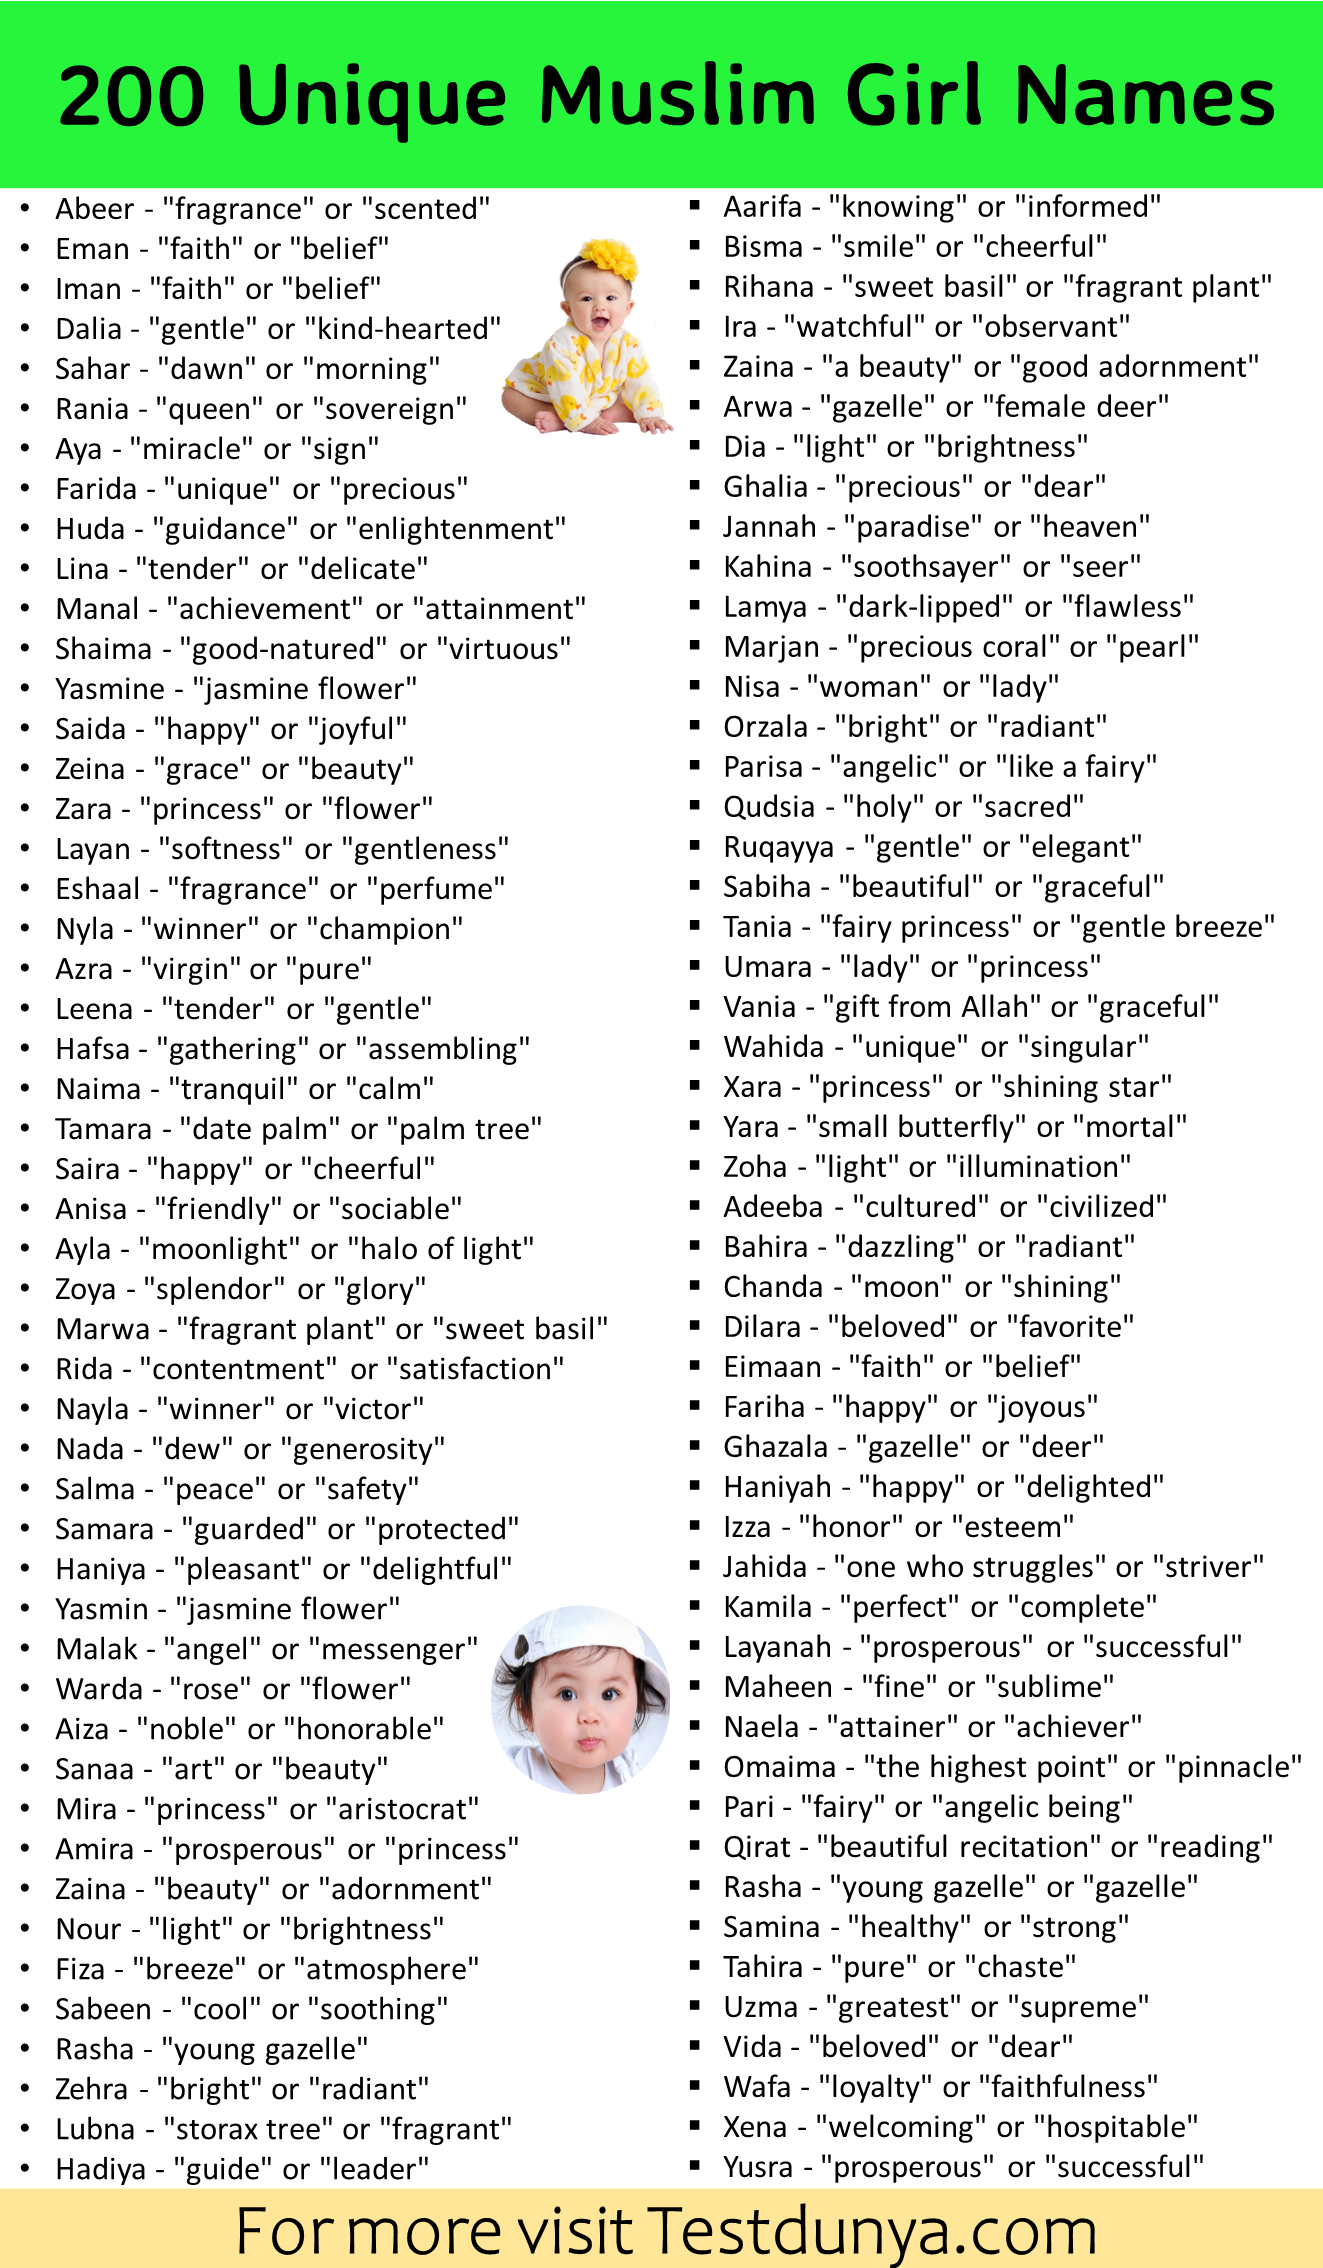 200 Unique Muslim Girl Names